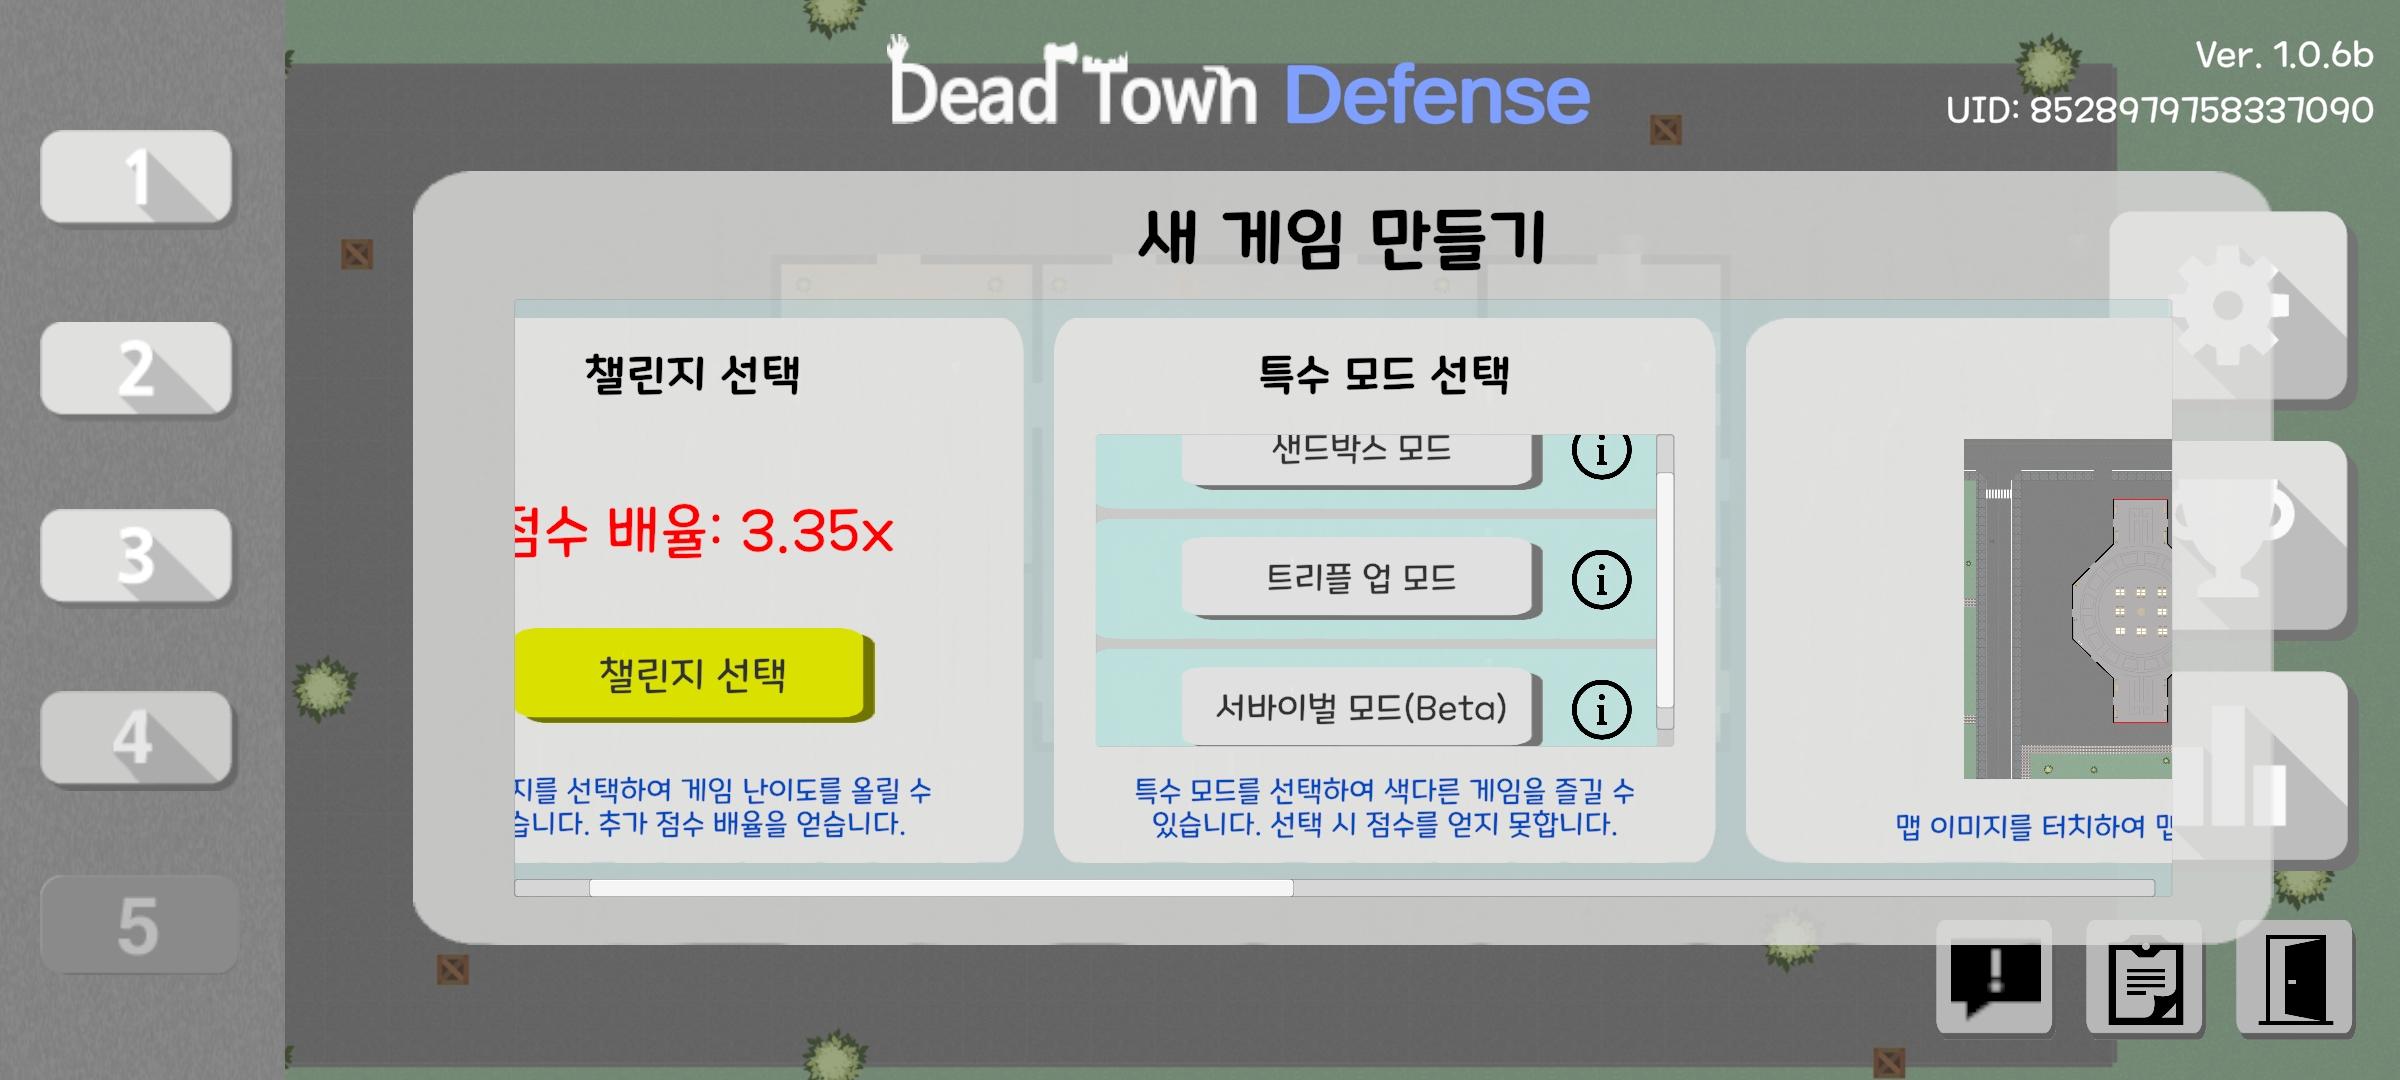 데드 타운 디펜스 [Dead Town Defense] screenshot game